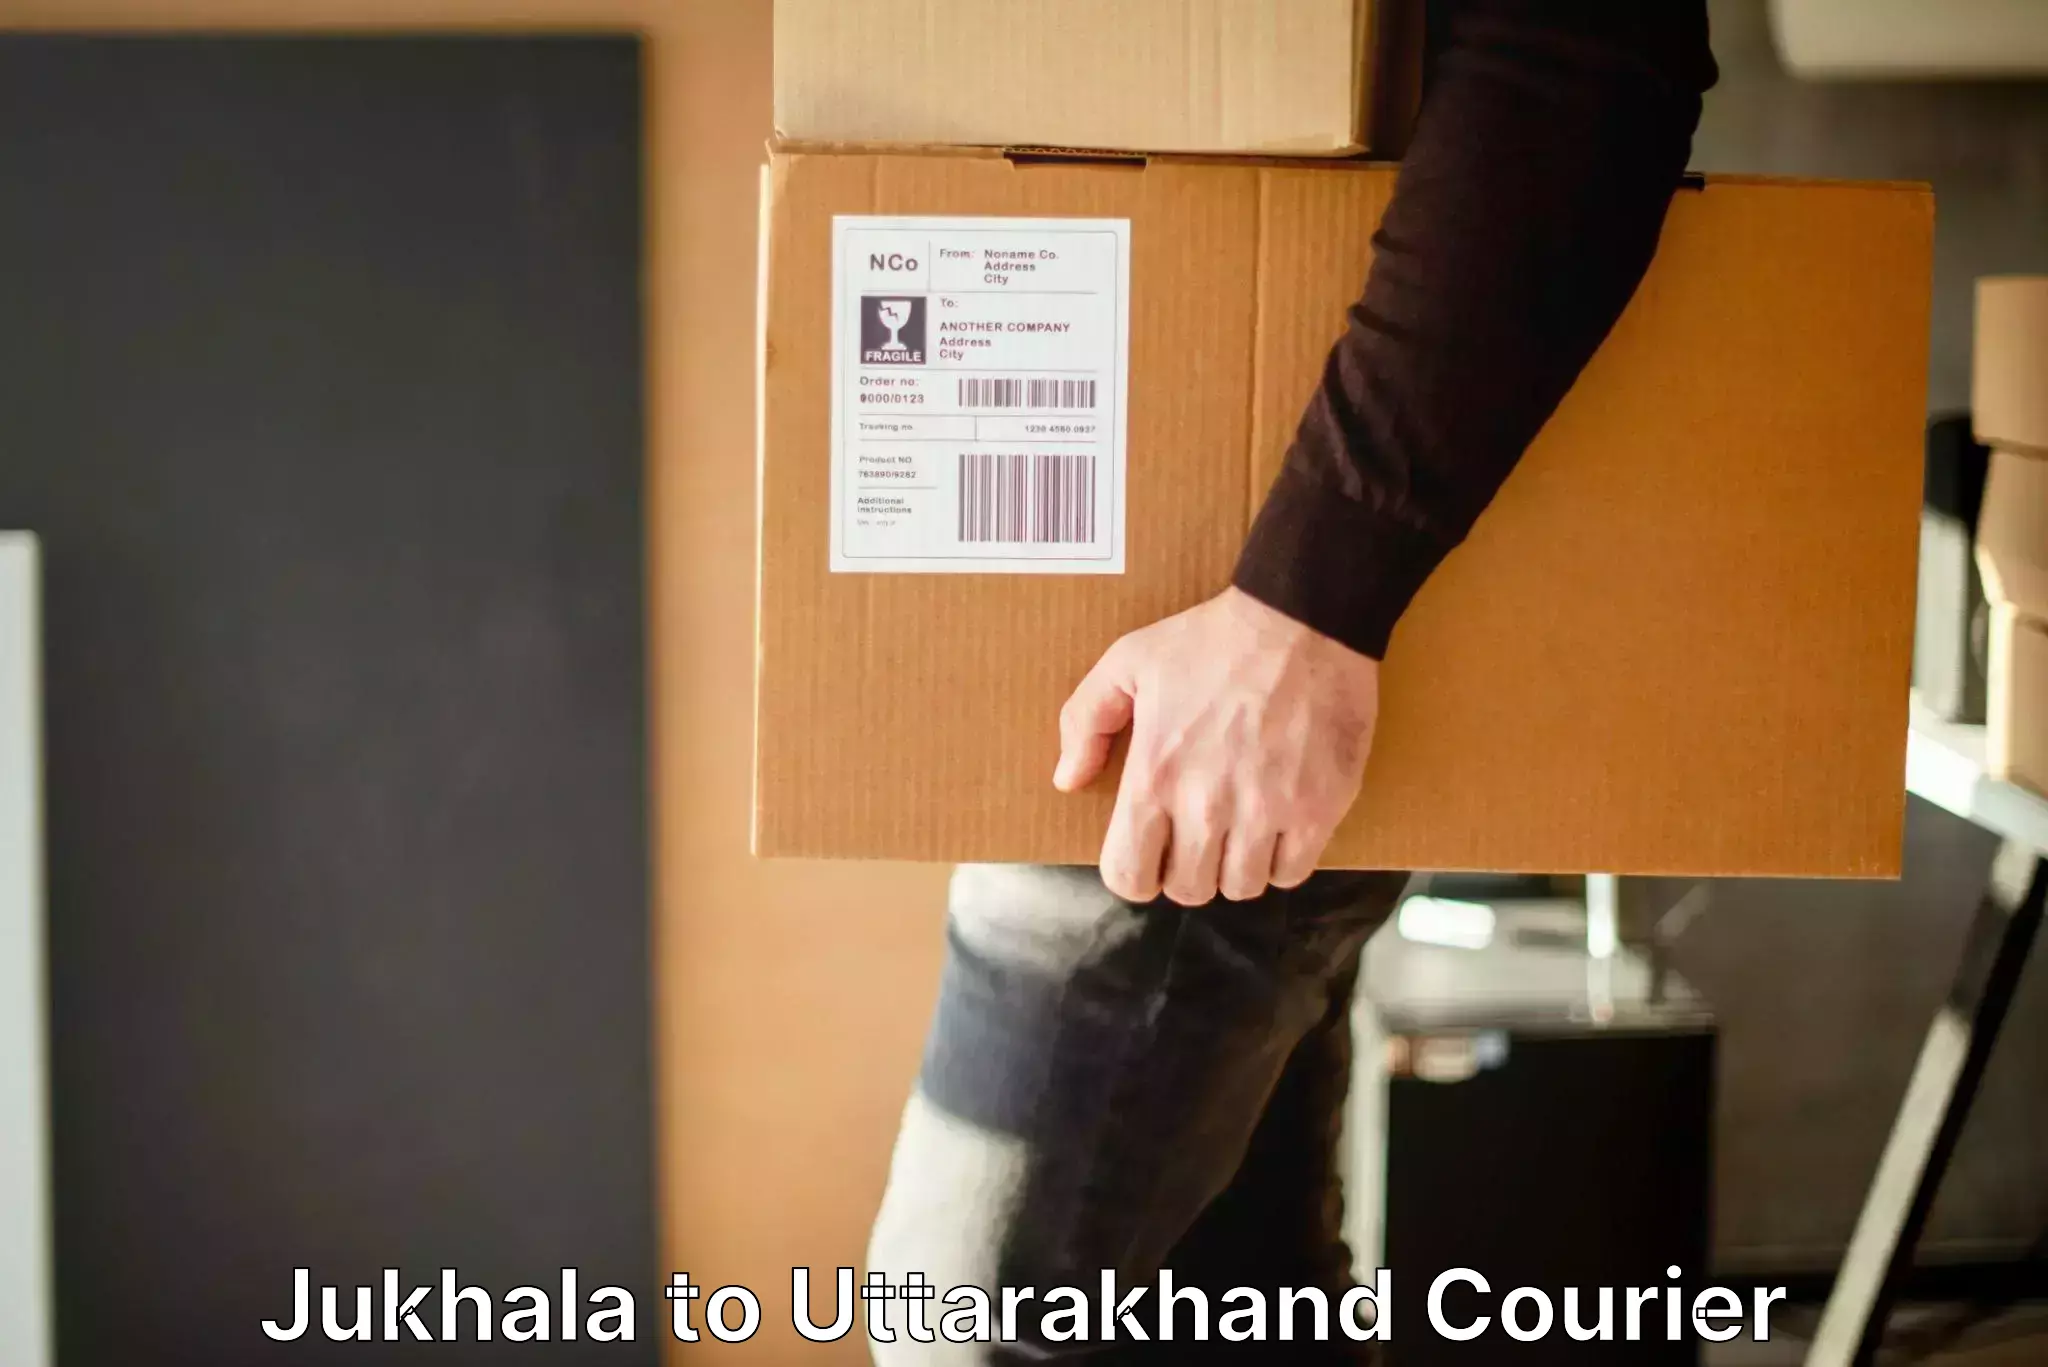 Luggage transit service Jukhala to Uttarakhand